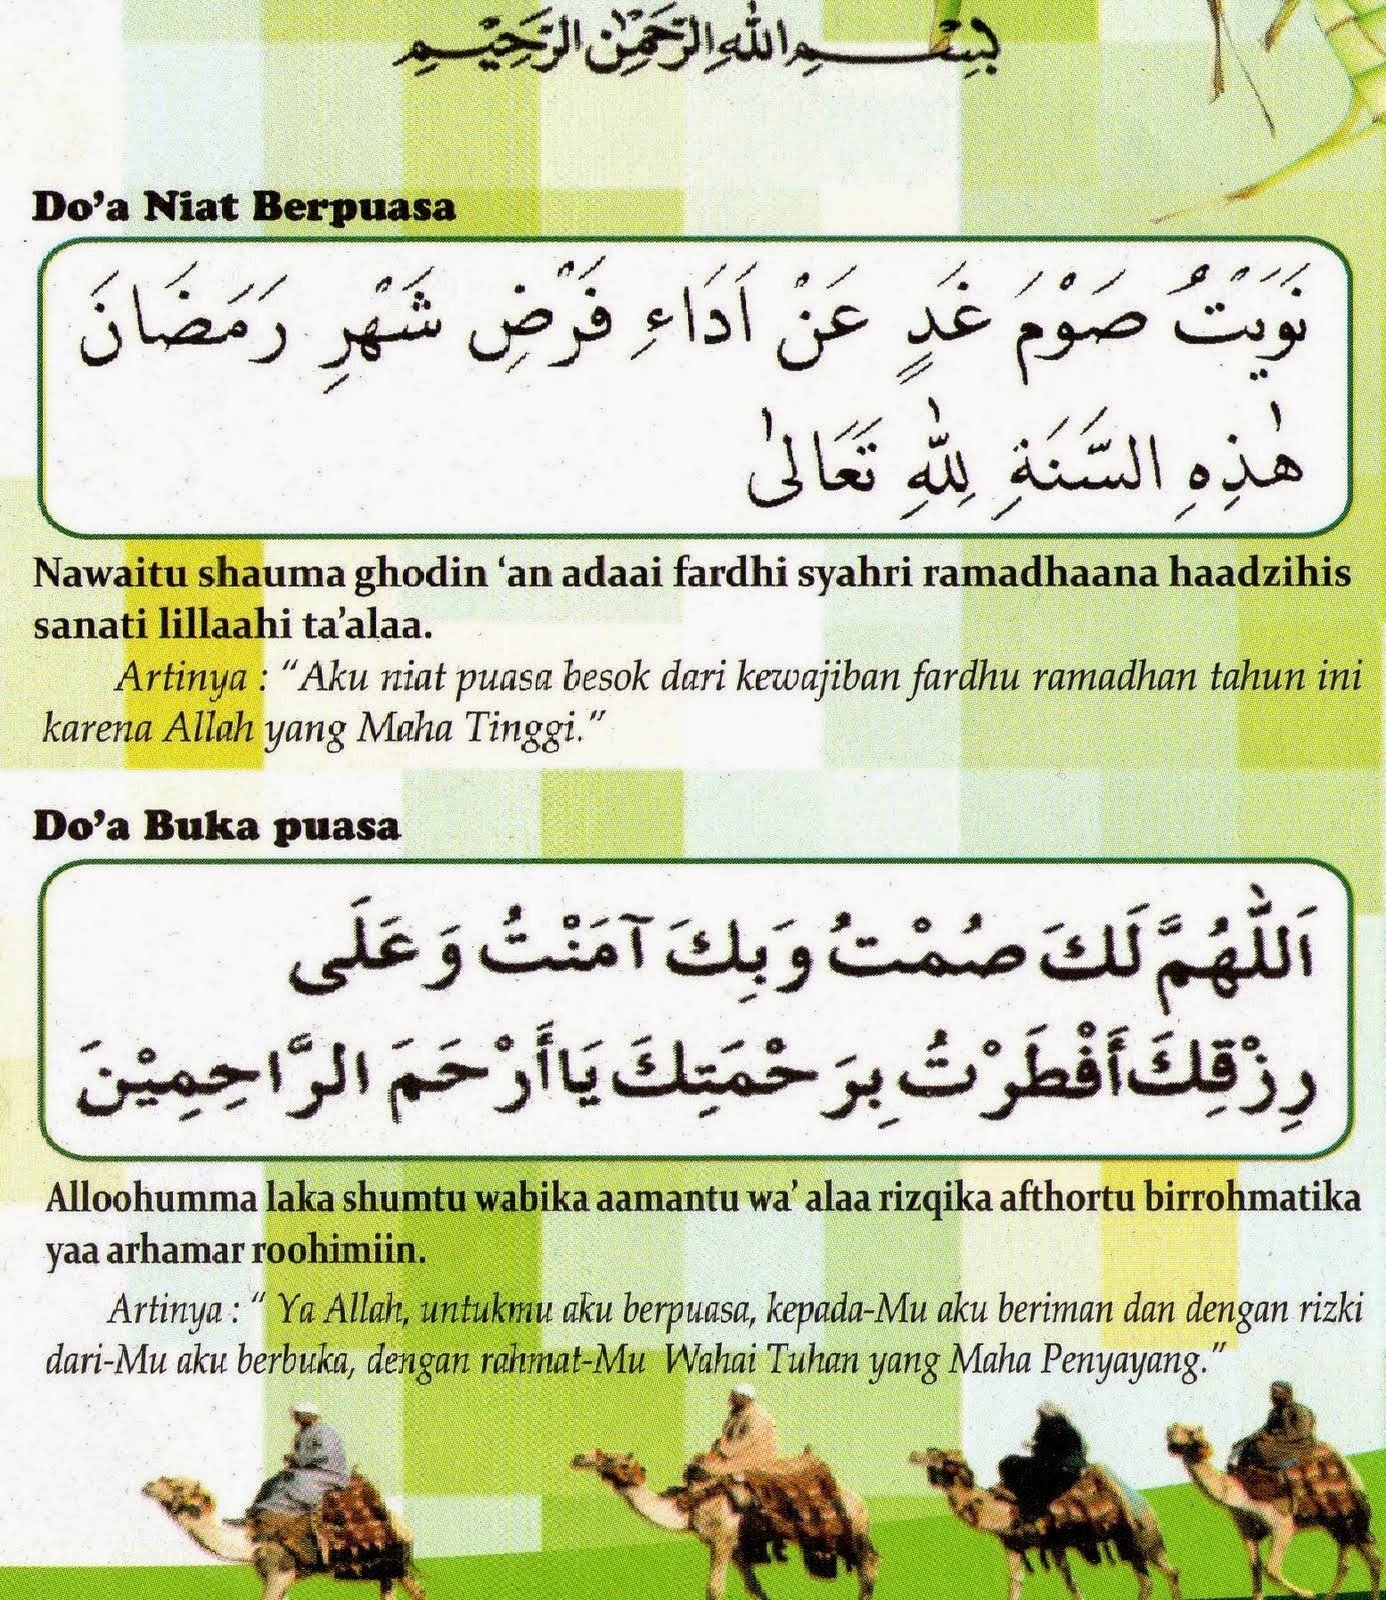 Bacaan+Doa+Niat+BerPuasa+&+Buka+Puasa+Ramadhan+Lafaz+Tulisan+Arab+dan+Artinya